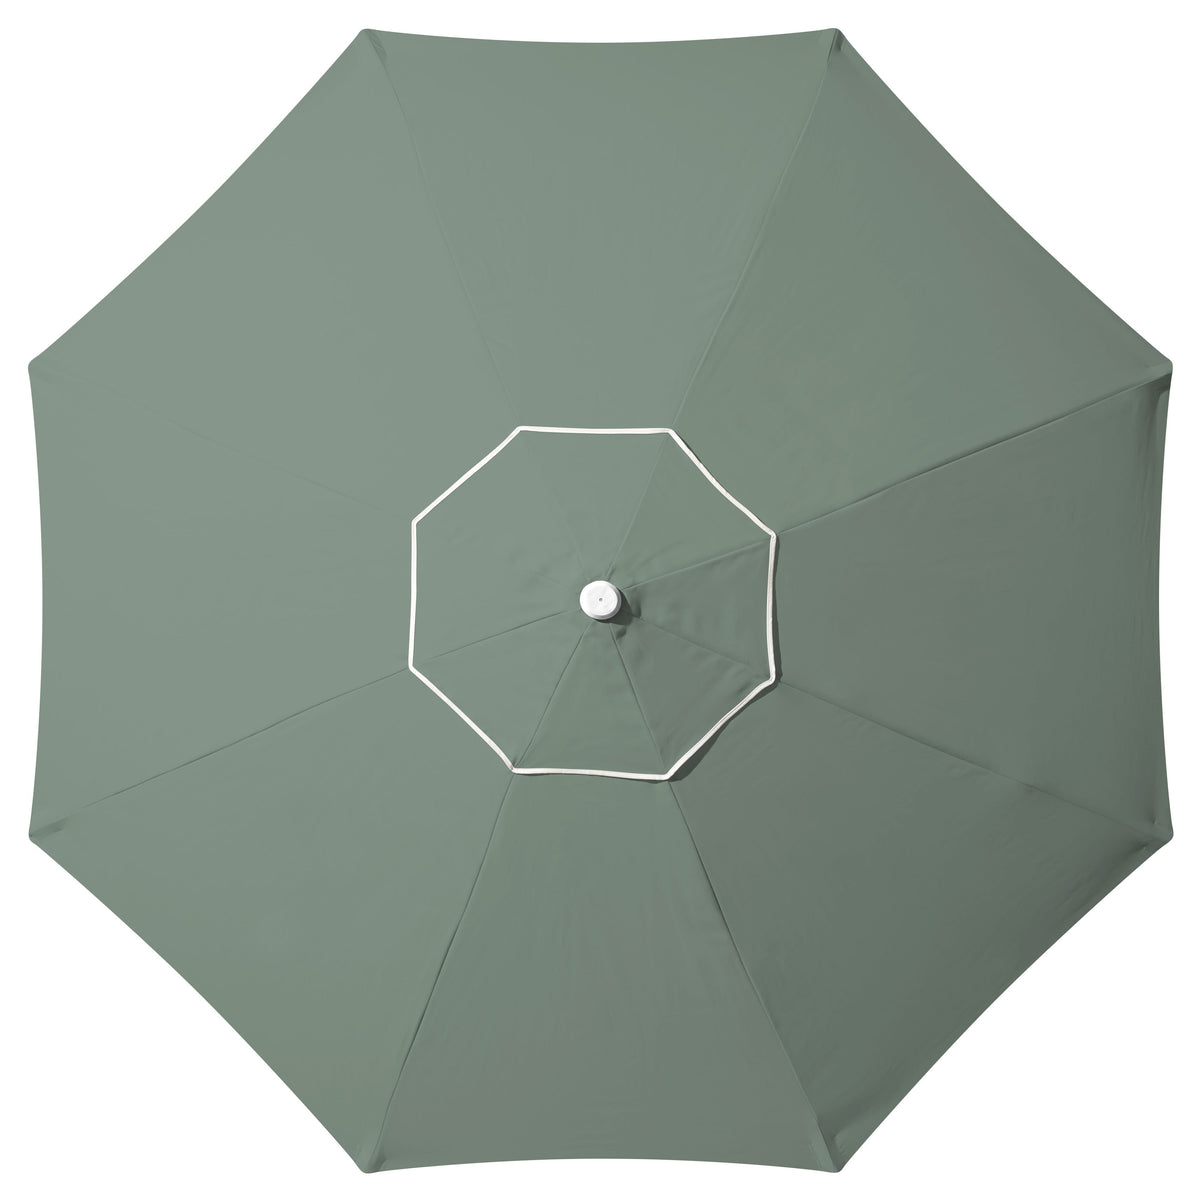 Tallow Market Umbrella